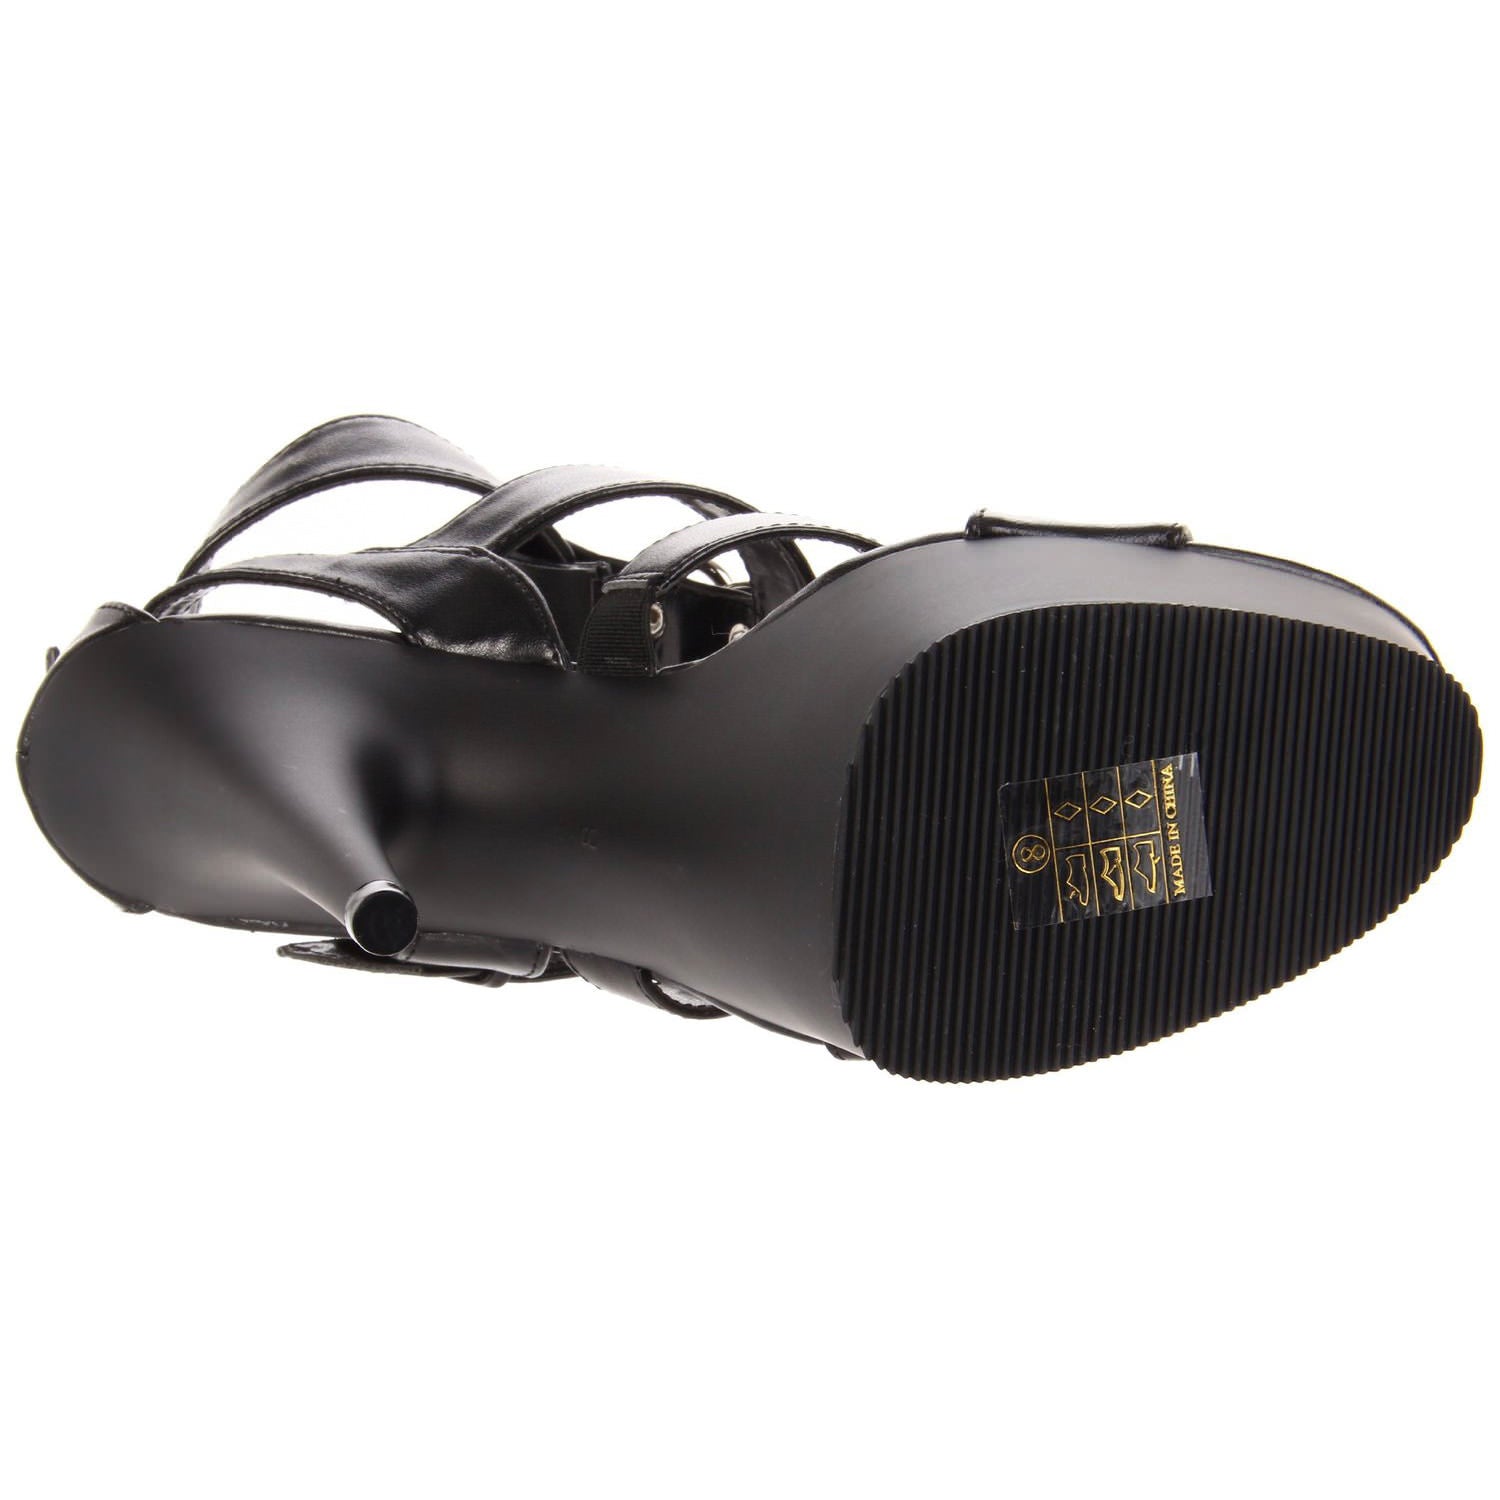 PLEASER DELIGHT-658 Black T-Strap Sandals - Shoecup.com - 7